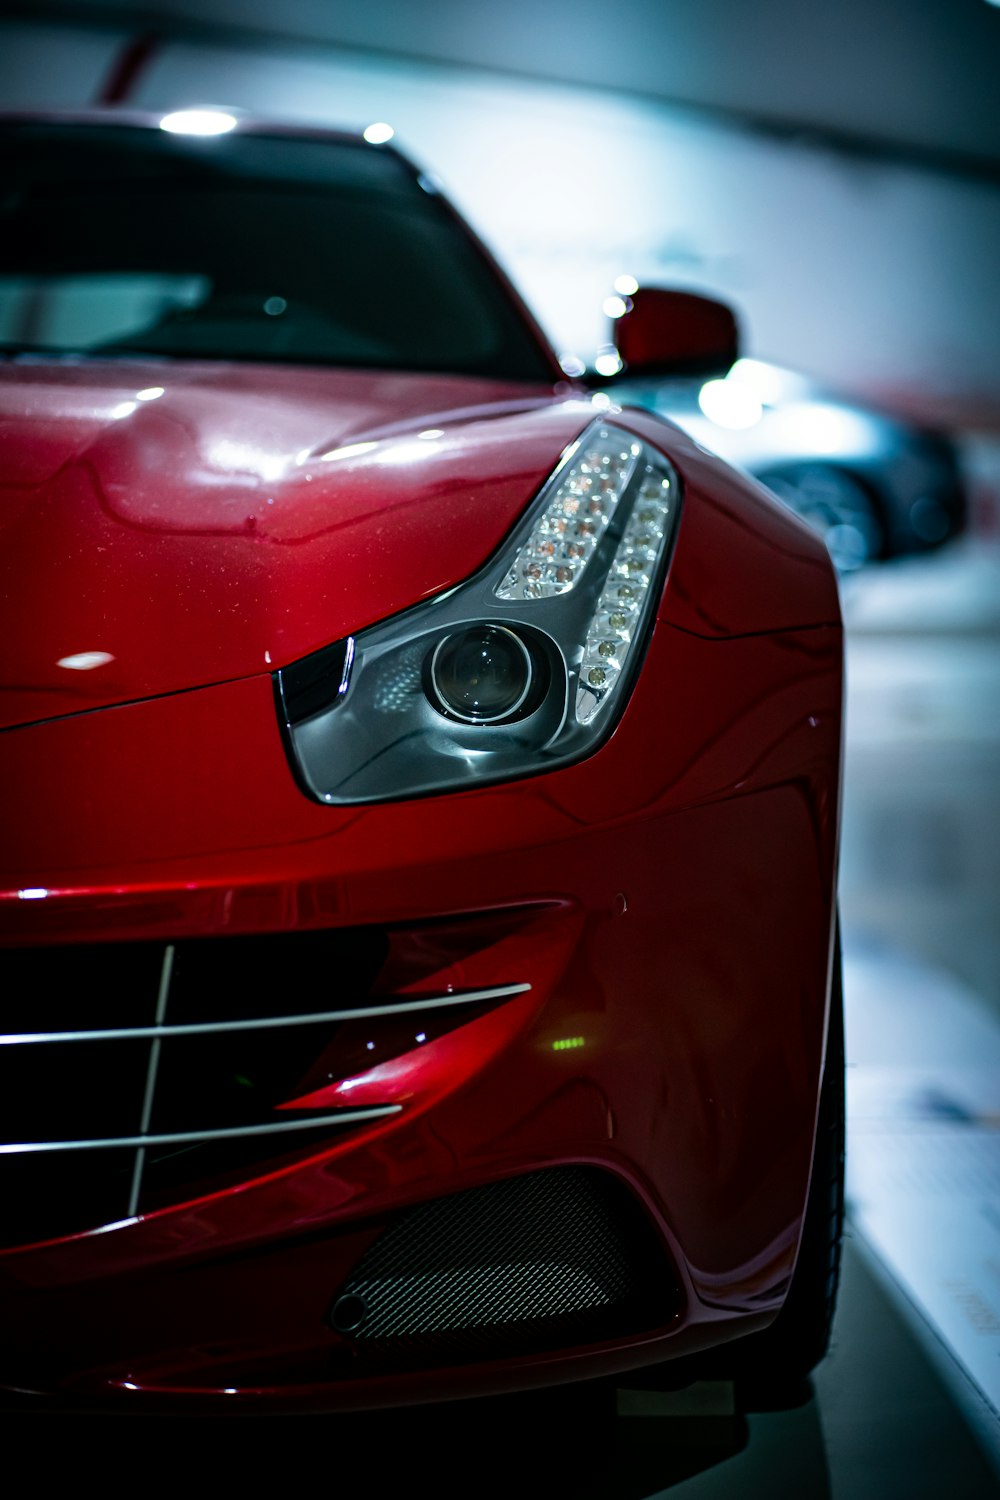 Coche Mercedes Benz rojo en fotografía de primer plano